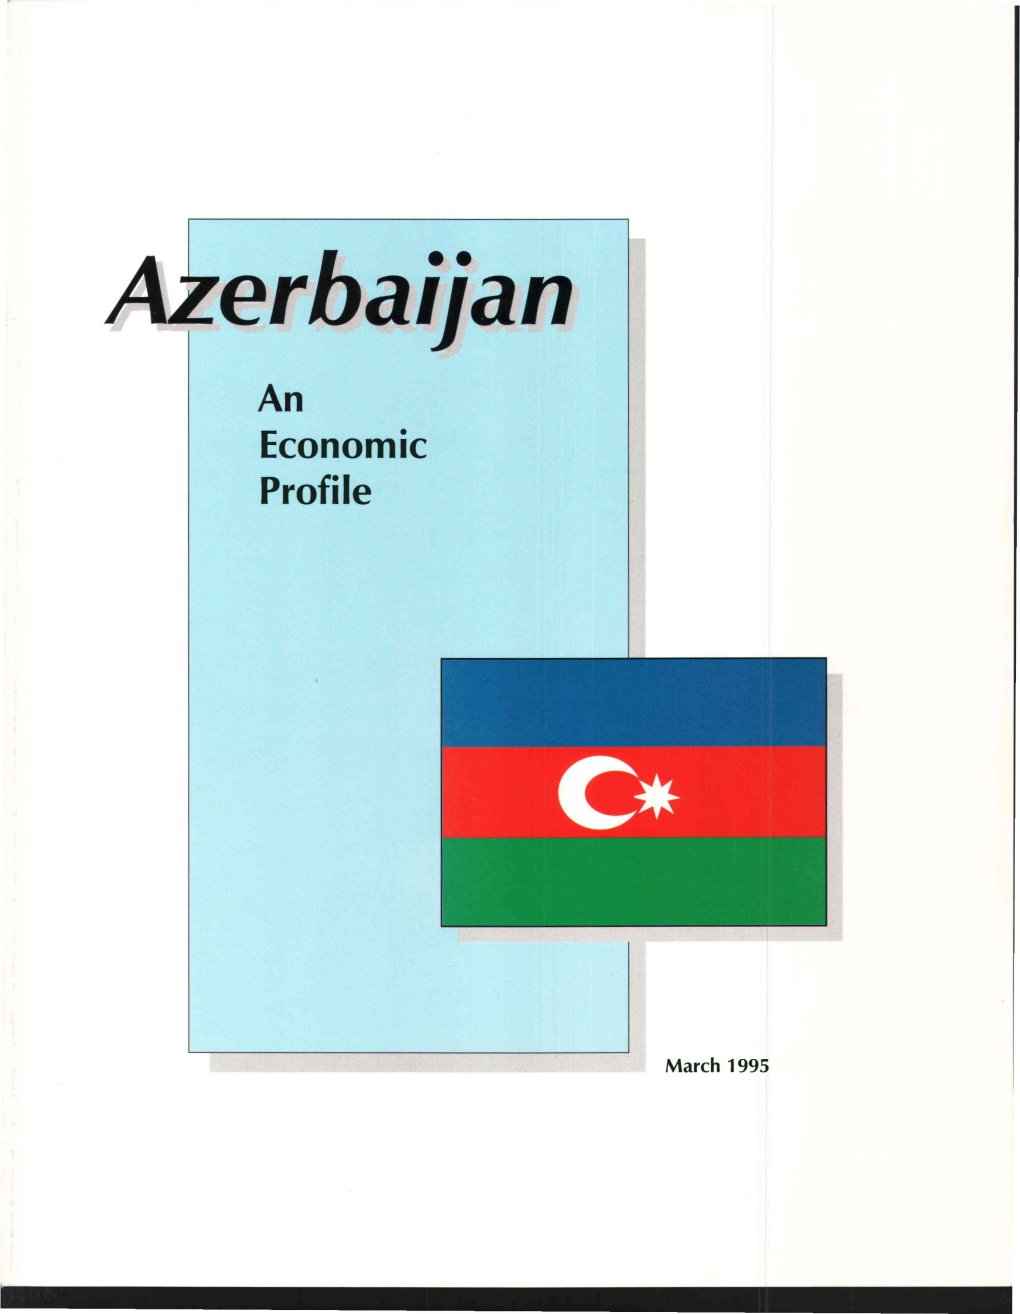 Azerbaijan: an Economic Profile